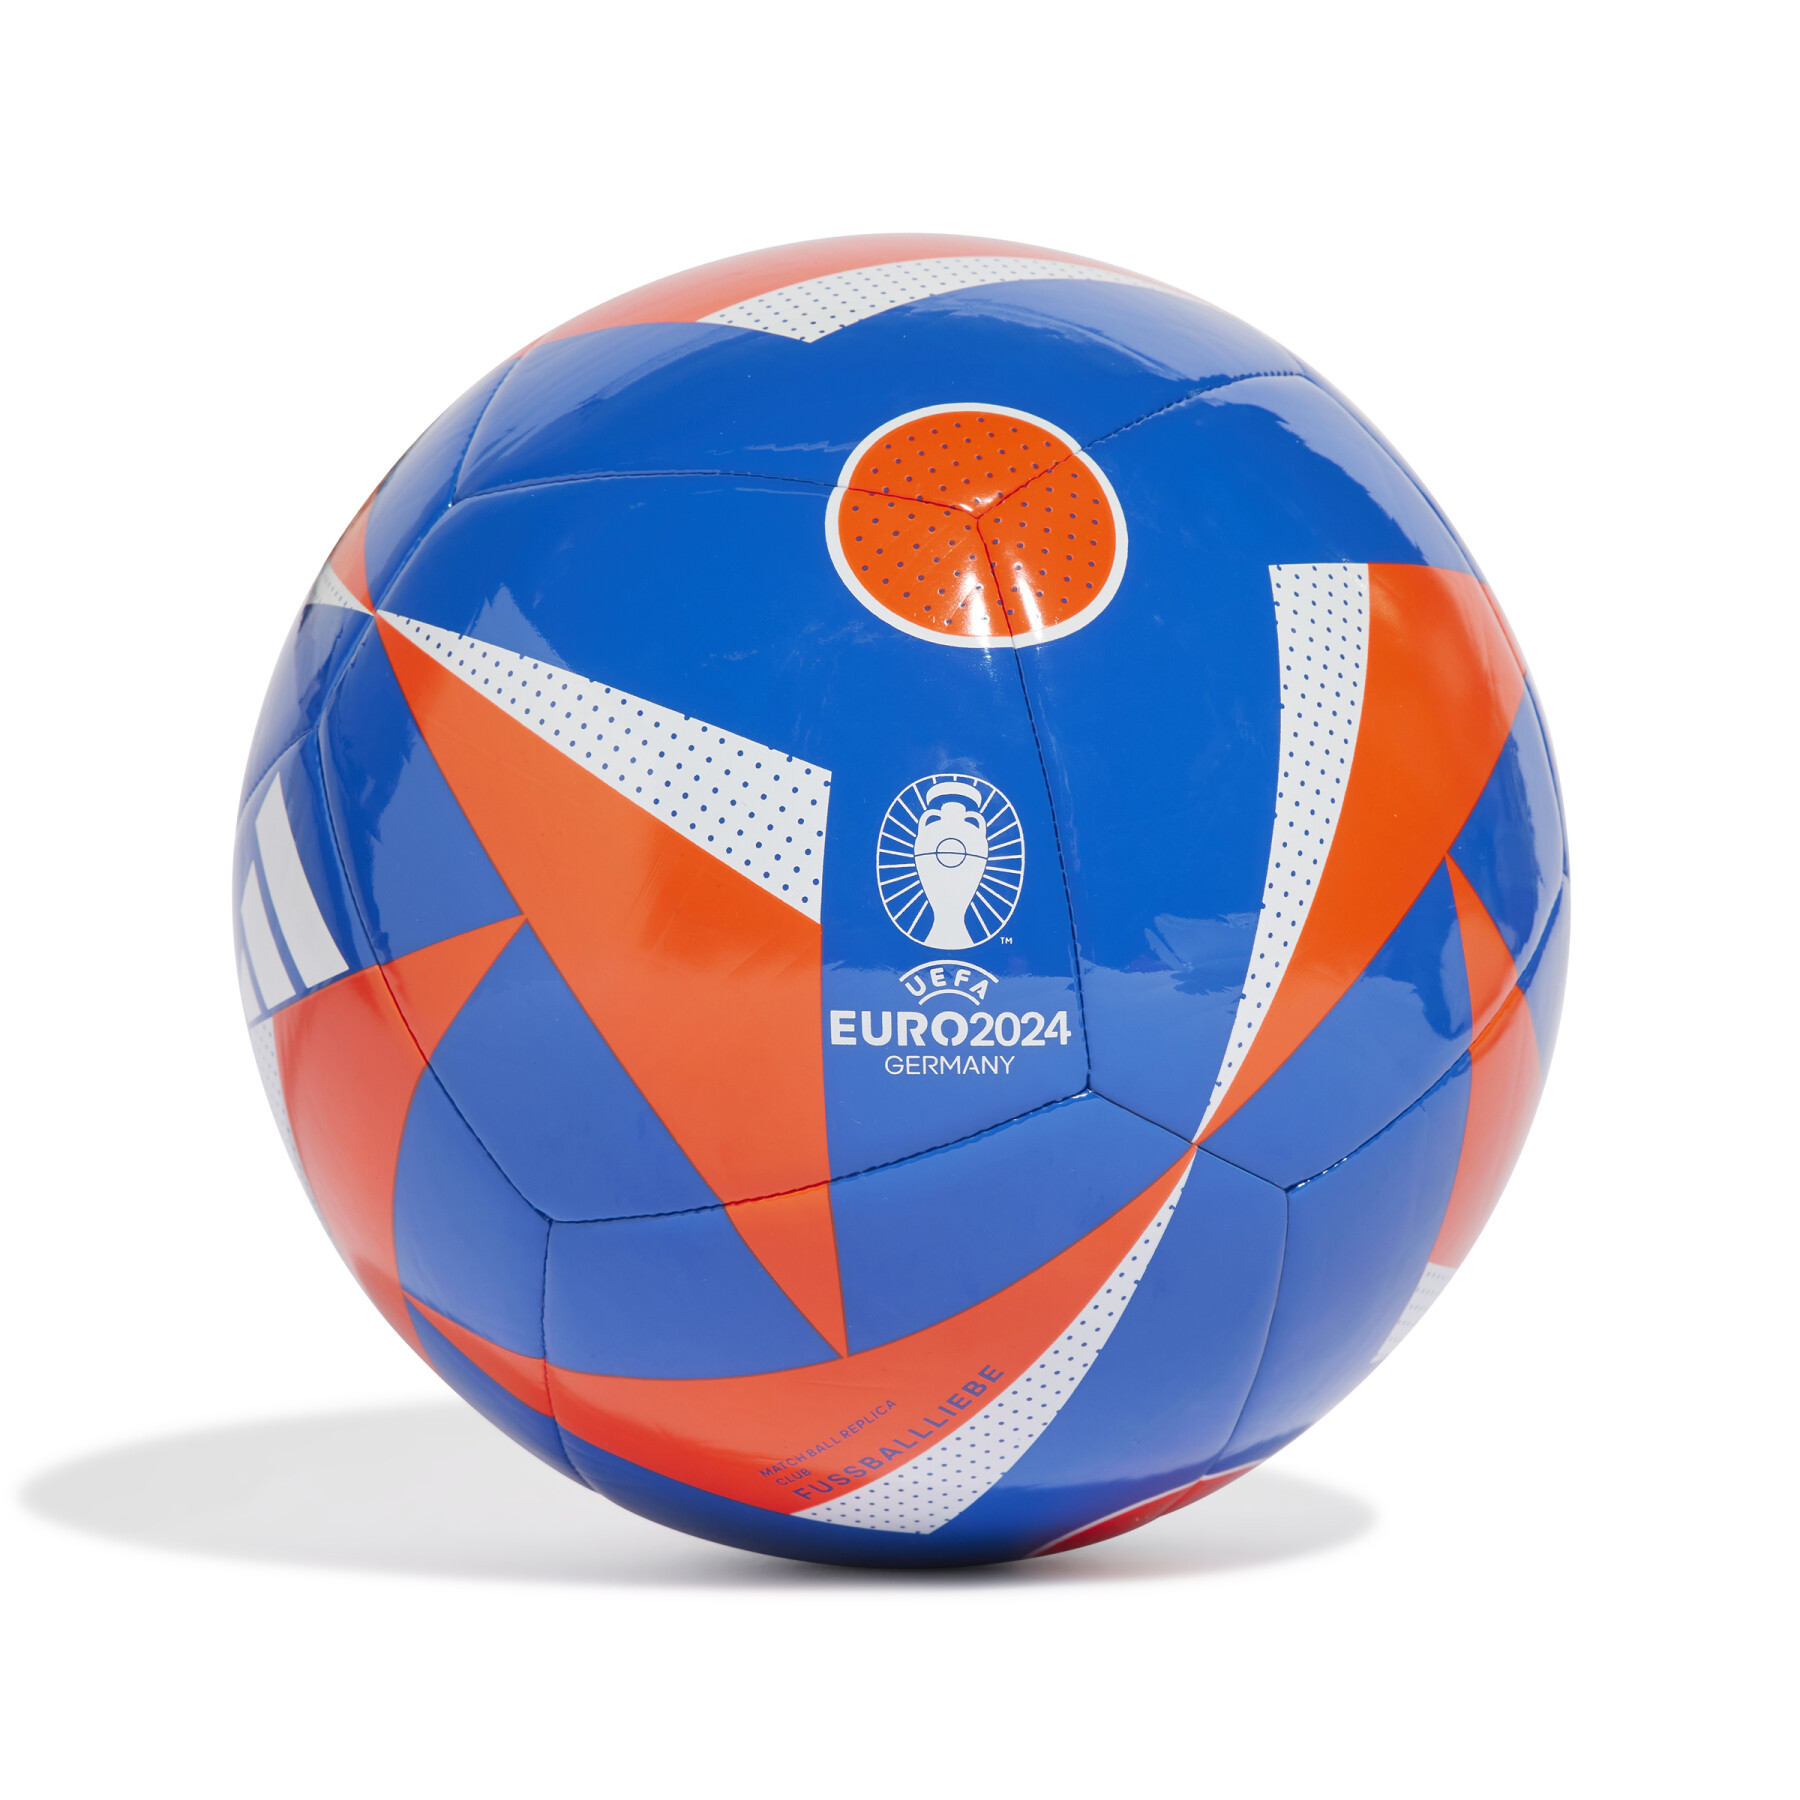 Ballon de club adidas Euro 2024 - adidas - Marques - Ballons